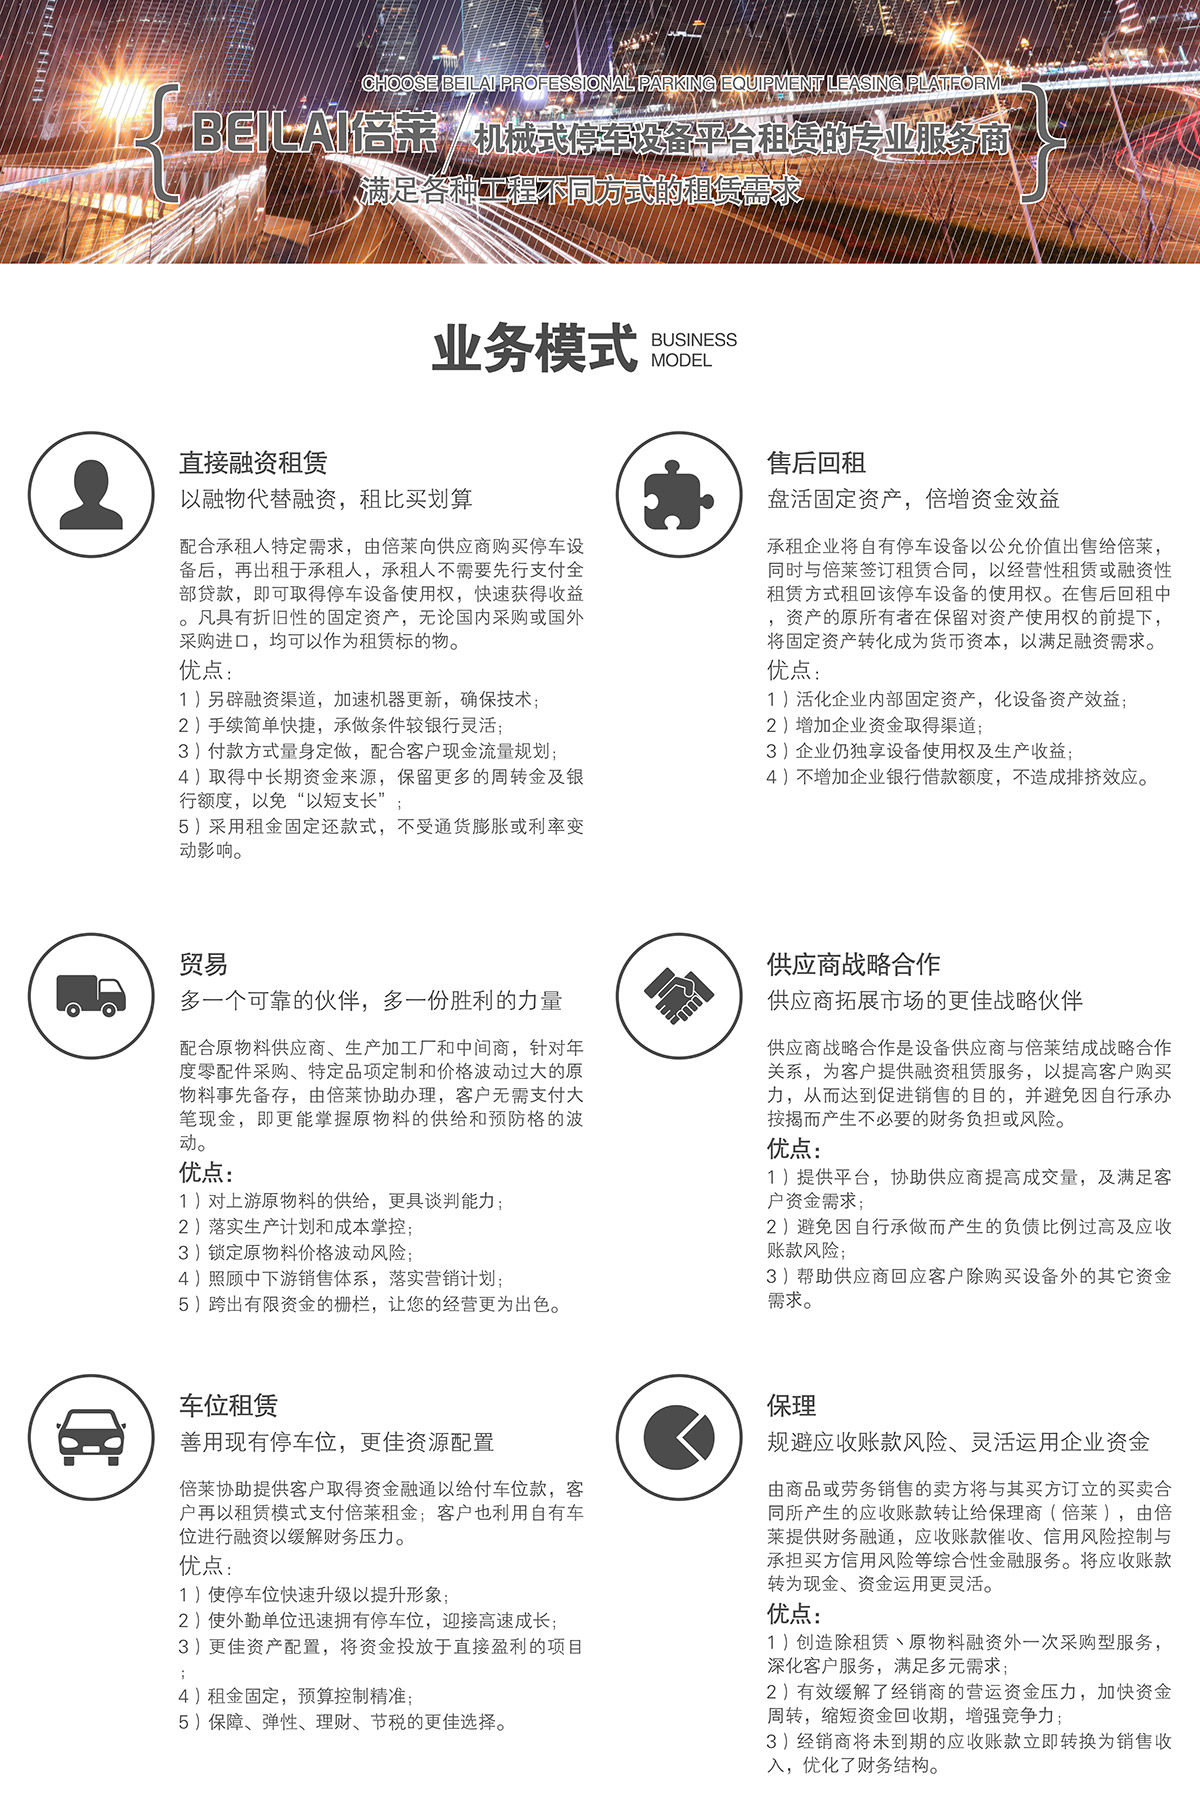 贵州立体车库租赁业务模式满足各种工程租赁需求.jpg